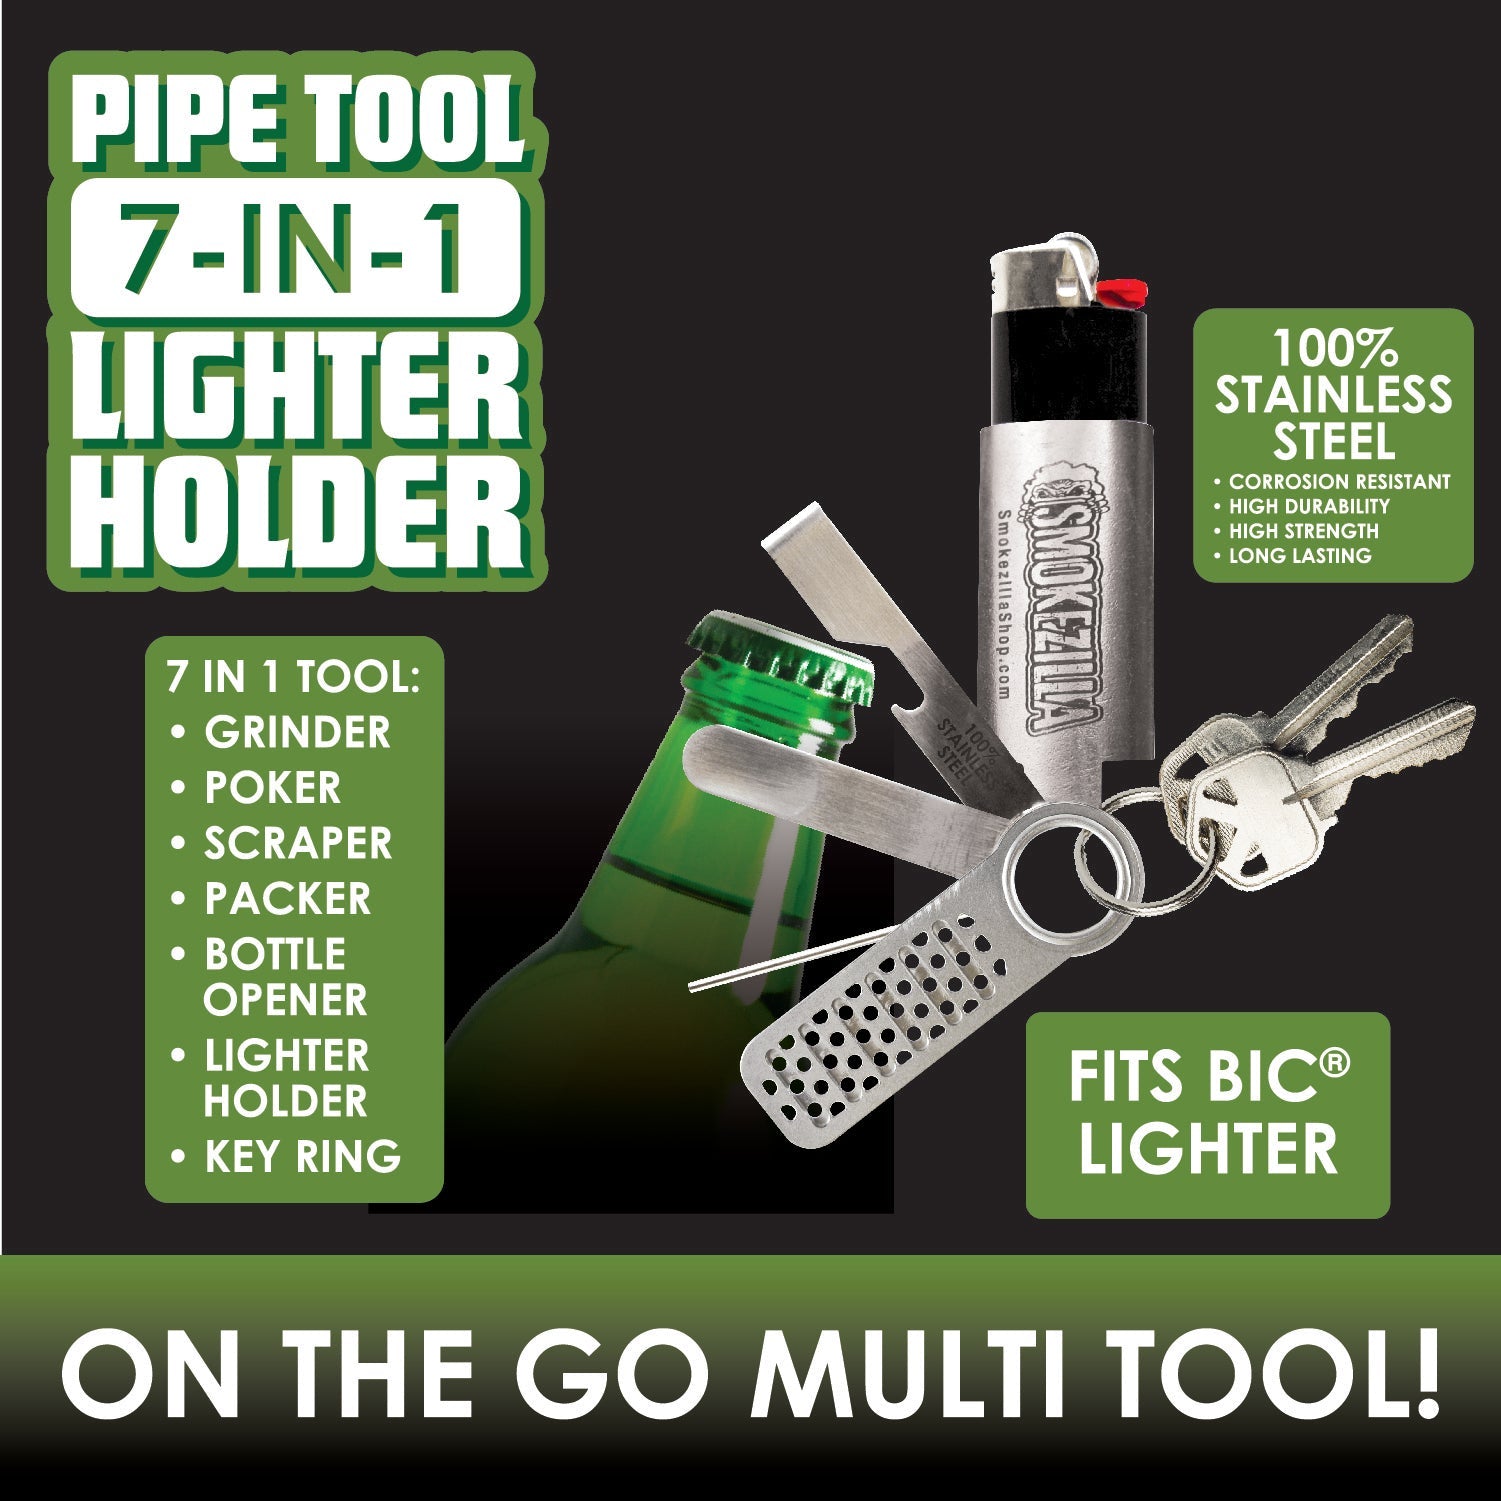 Lighter Case Stainless Steel Multi-Tool Bottle  Opener/Scraper/Grinder/Packer/Picker/File for BIC Lighters